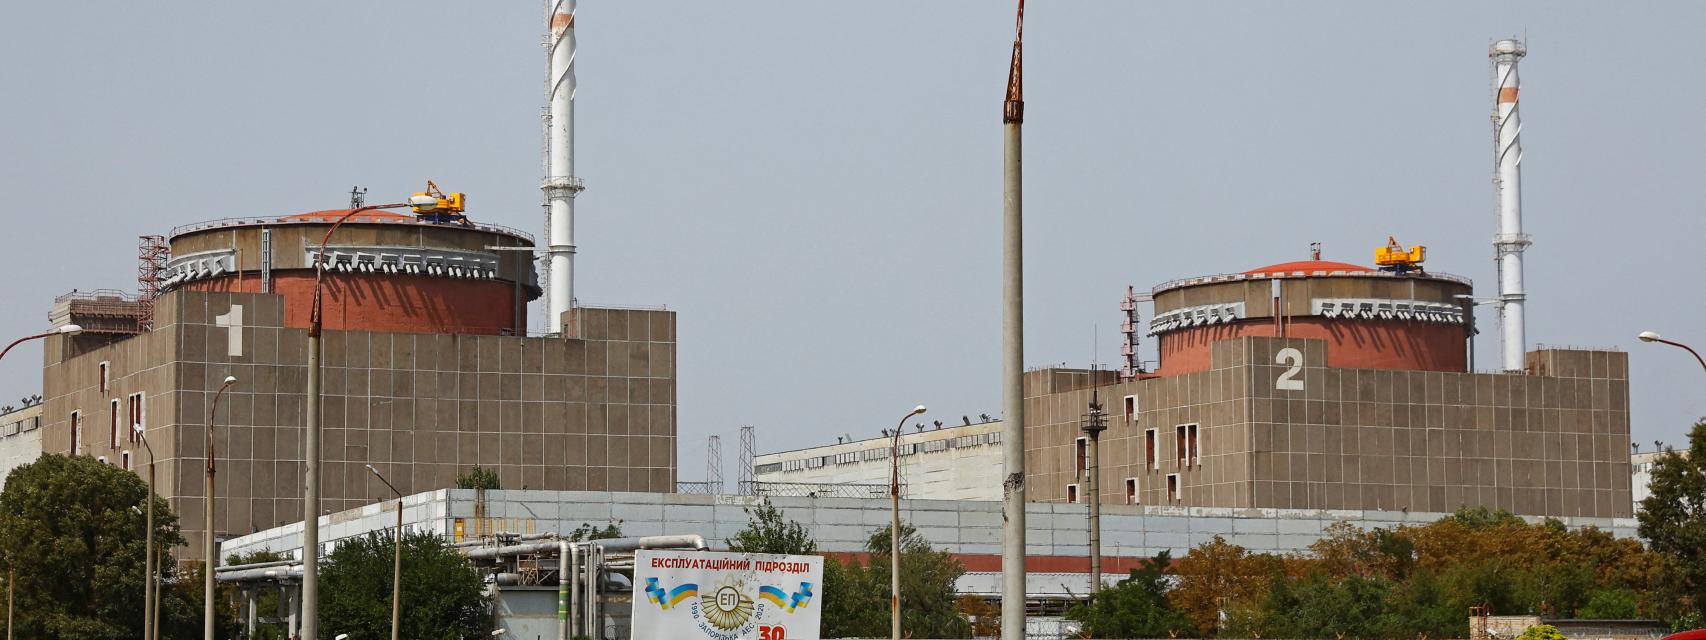 Imagen exterior de la central nuclear de Zaporiyia, en Ucrania